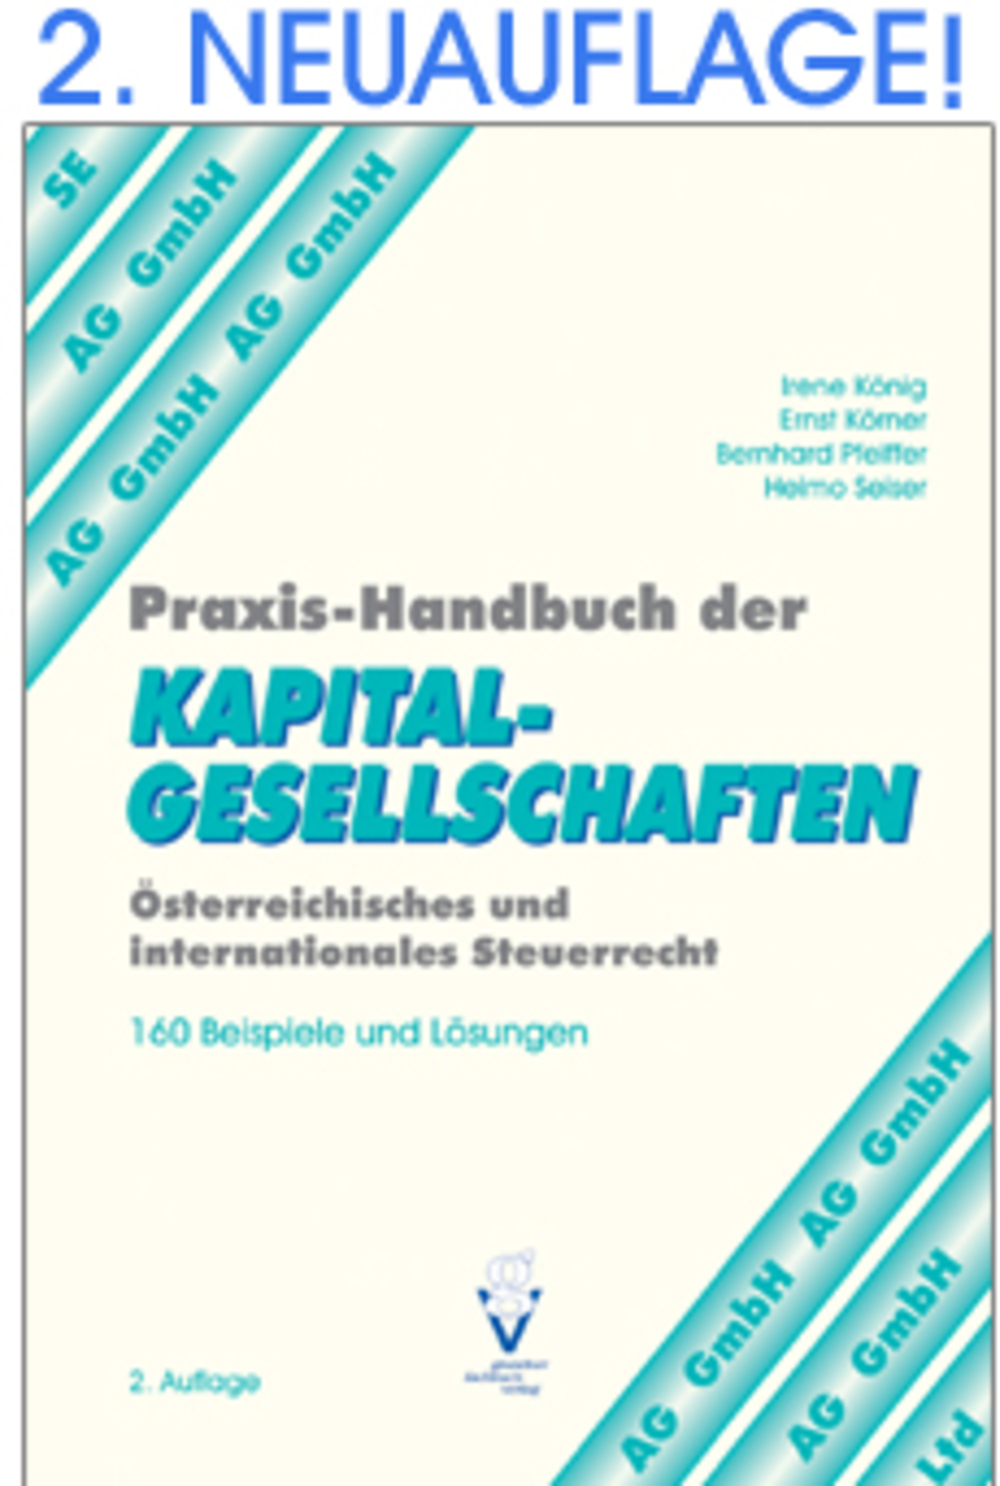 Praxis-Handbuch der KAPITALGESELLSCHAFTEN